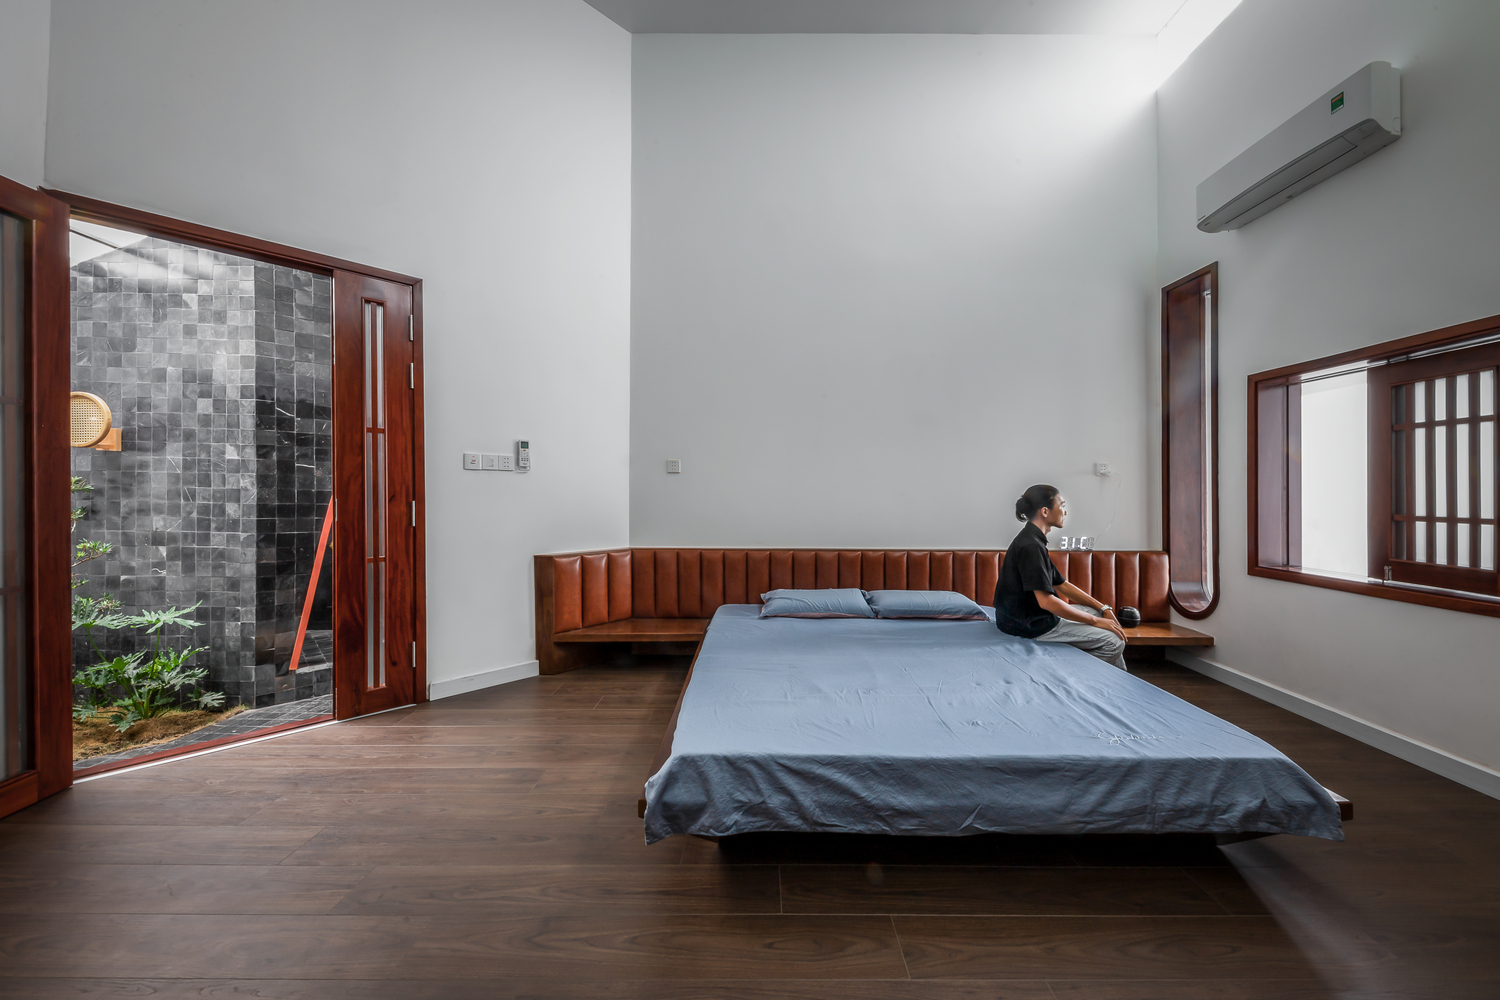 Phòng ngủ đón được nắng gió tự nhiên nhờ thiết kế mở kết nối với giếng trời, sân trong.